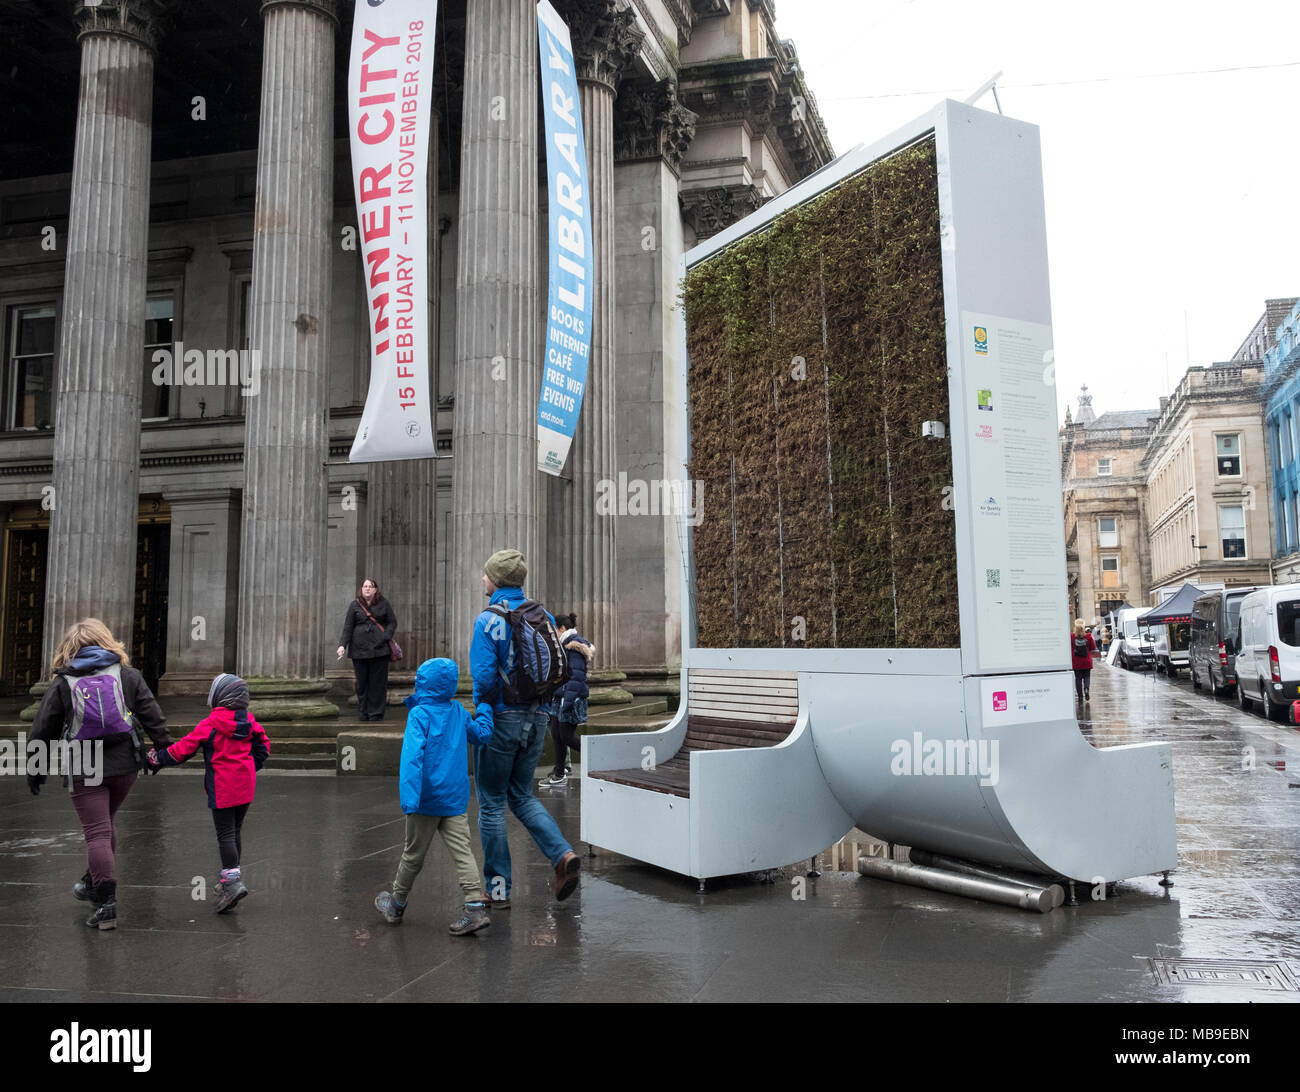 Große outdoor Luft reinigenden Maschine auf der Straße im Zentrum von Glasgow, Schottland, Vereinigtes Königreich Stockfoto